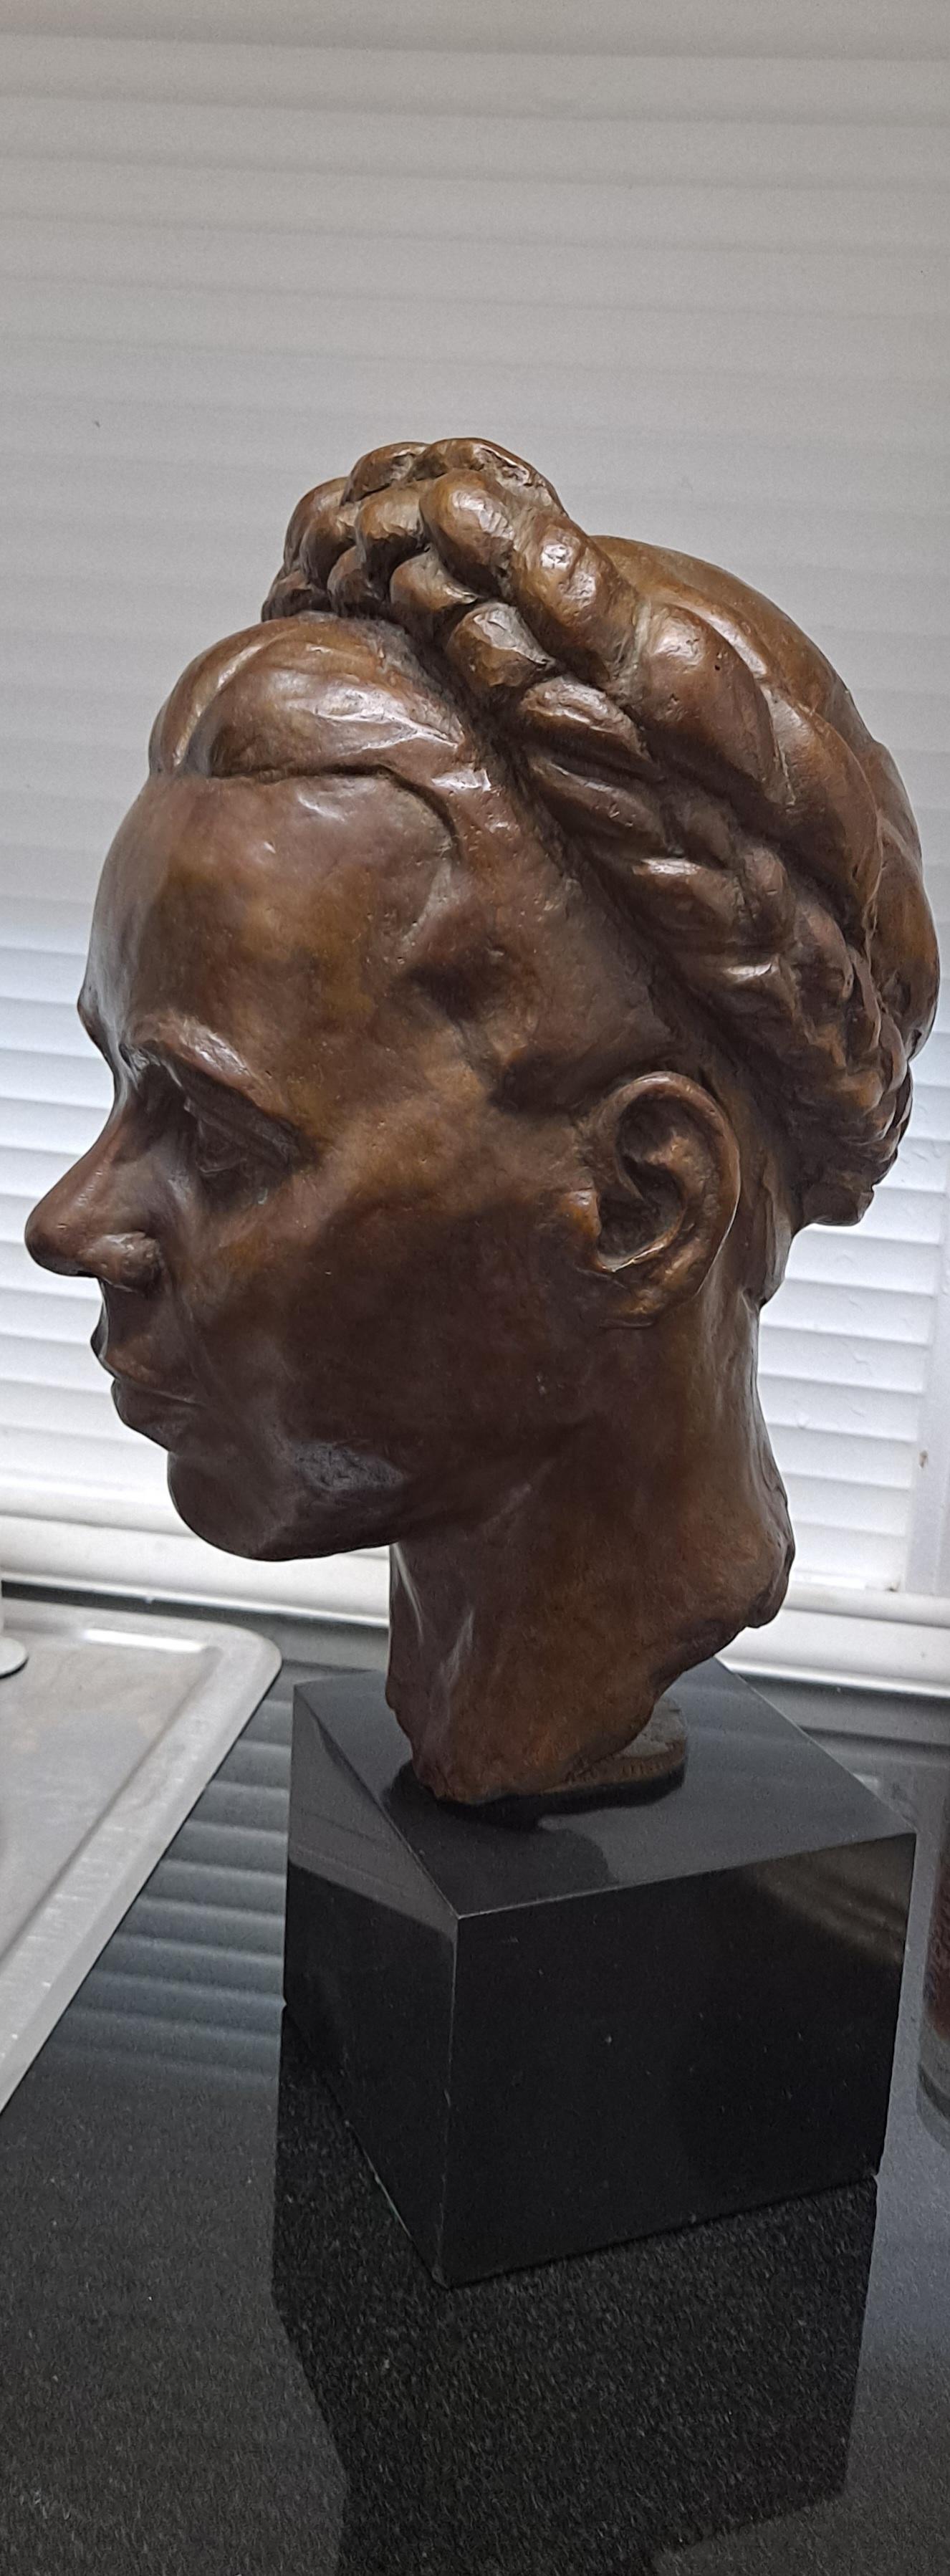 Anfang des 20. Jahrhunderts Außergewöhnliche weibliche Büste aus Bronze von einem geheimnisvollen Künstler. 

Hergestellt im Wachsausschmelzverfahren

Ein wahrhaft einzigartiges Stück in Museumsqualität 

Gießereispuren an der Seite des